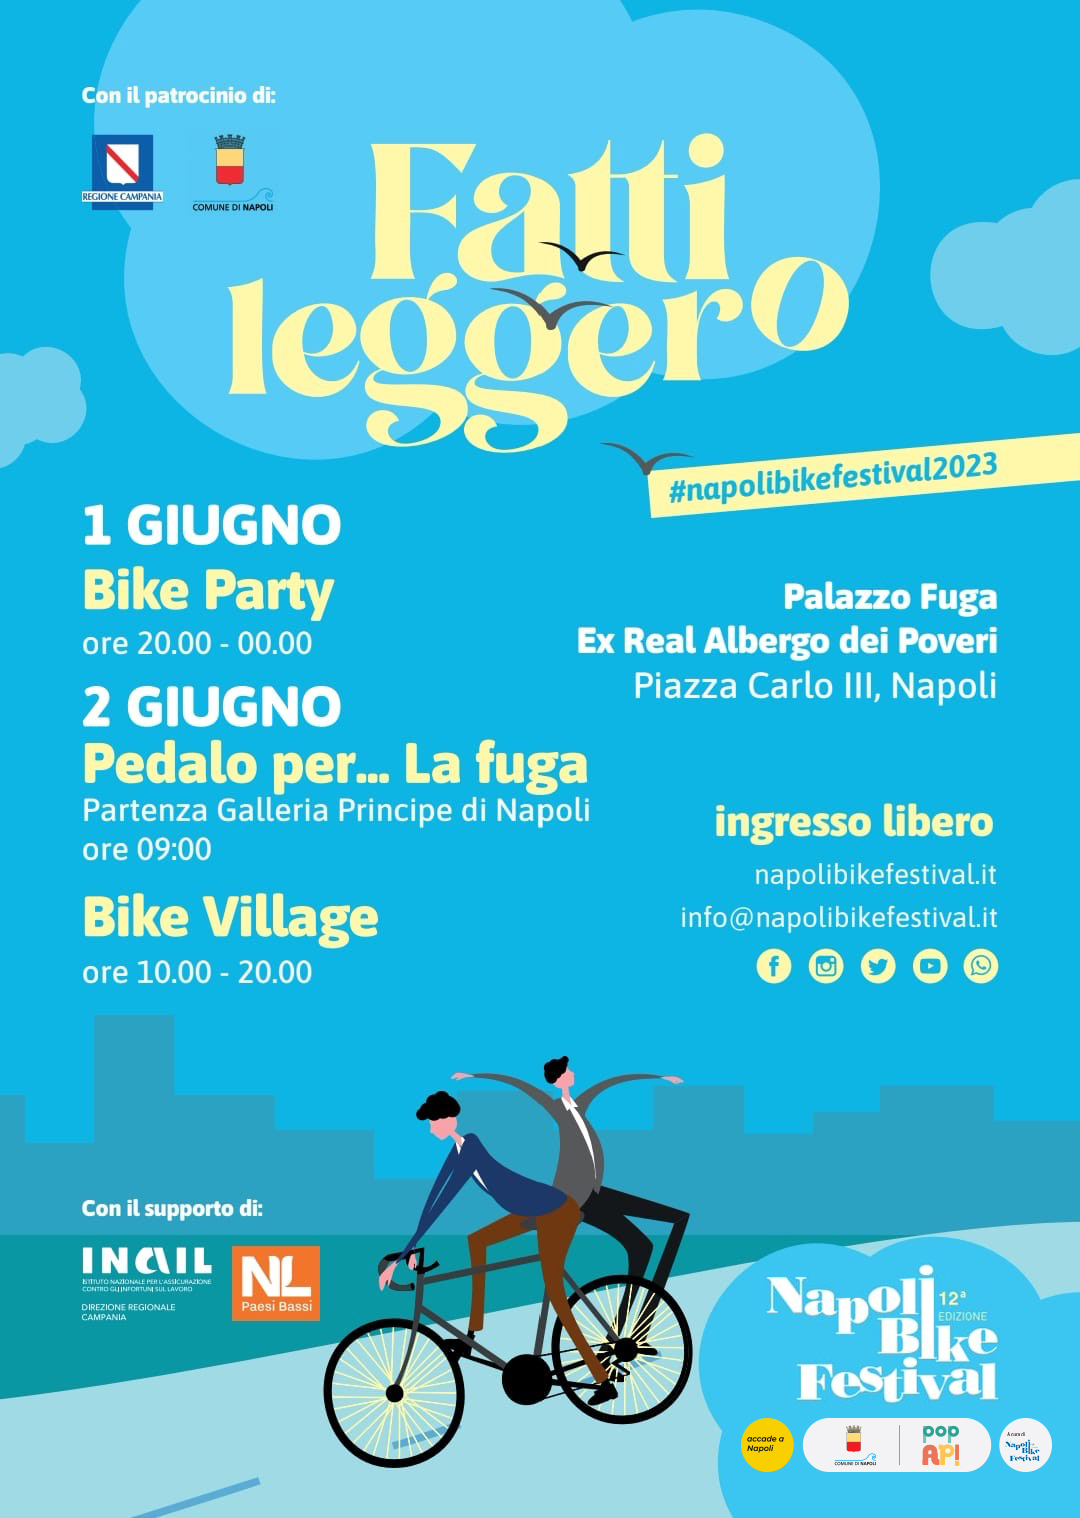 Napoli Bike Festival: l’evento si terrà l’1 e 2 giugno e il tema sarà “Fatti Leggero”